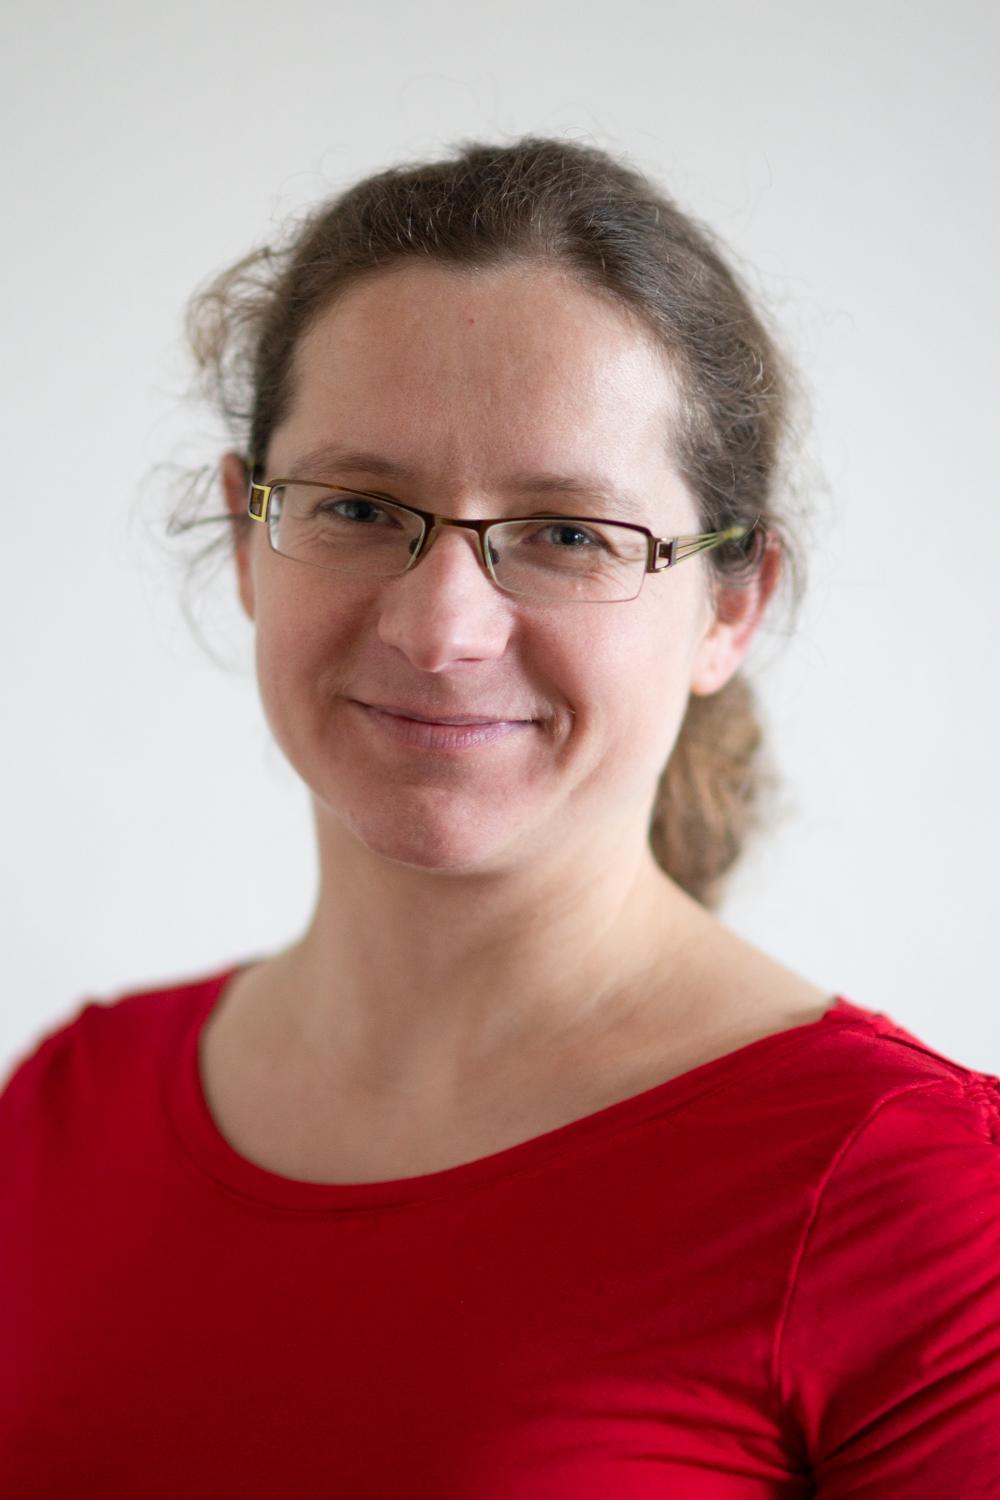 Tetyana Lutsyk ist Pastoralreferentin in der GdG Aachen-Nordwest und in der Flüchtlingsseelsorge tätig. (c) Tetjana Lutsyk